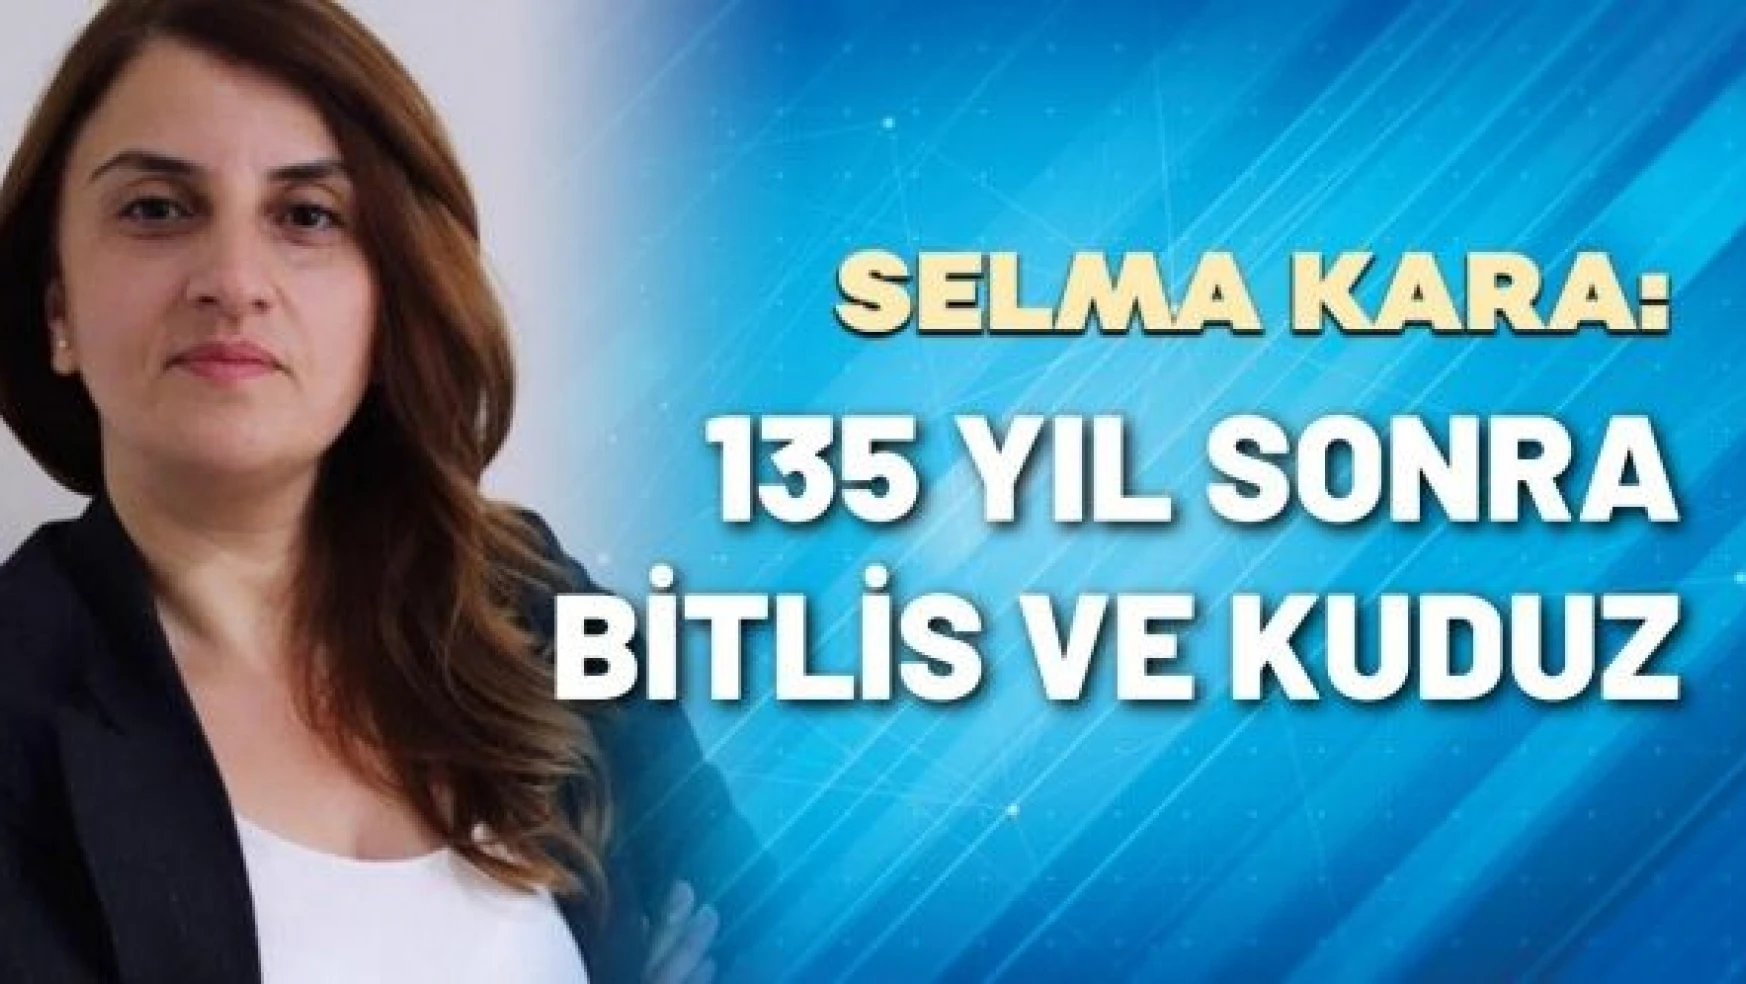 Gazeteci Selma Kara yazdı: &quot135 yıl sonra Bitlis ve kuduz"